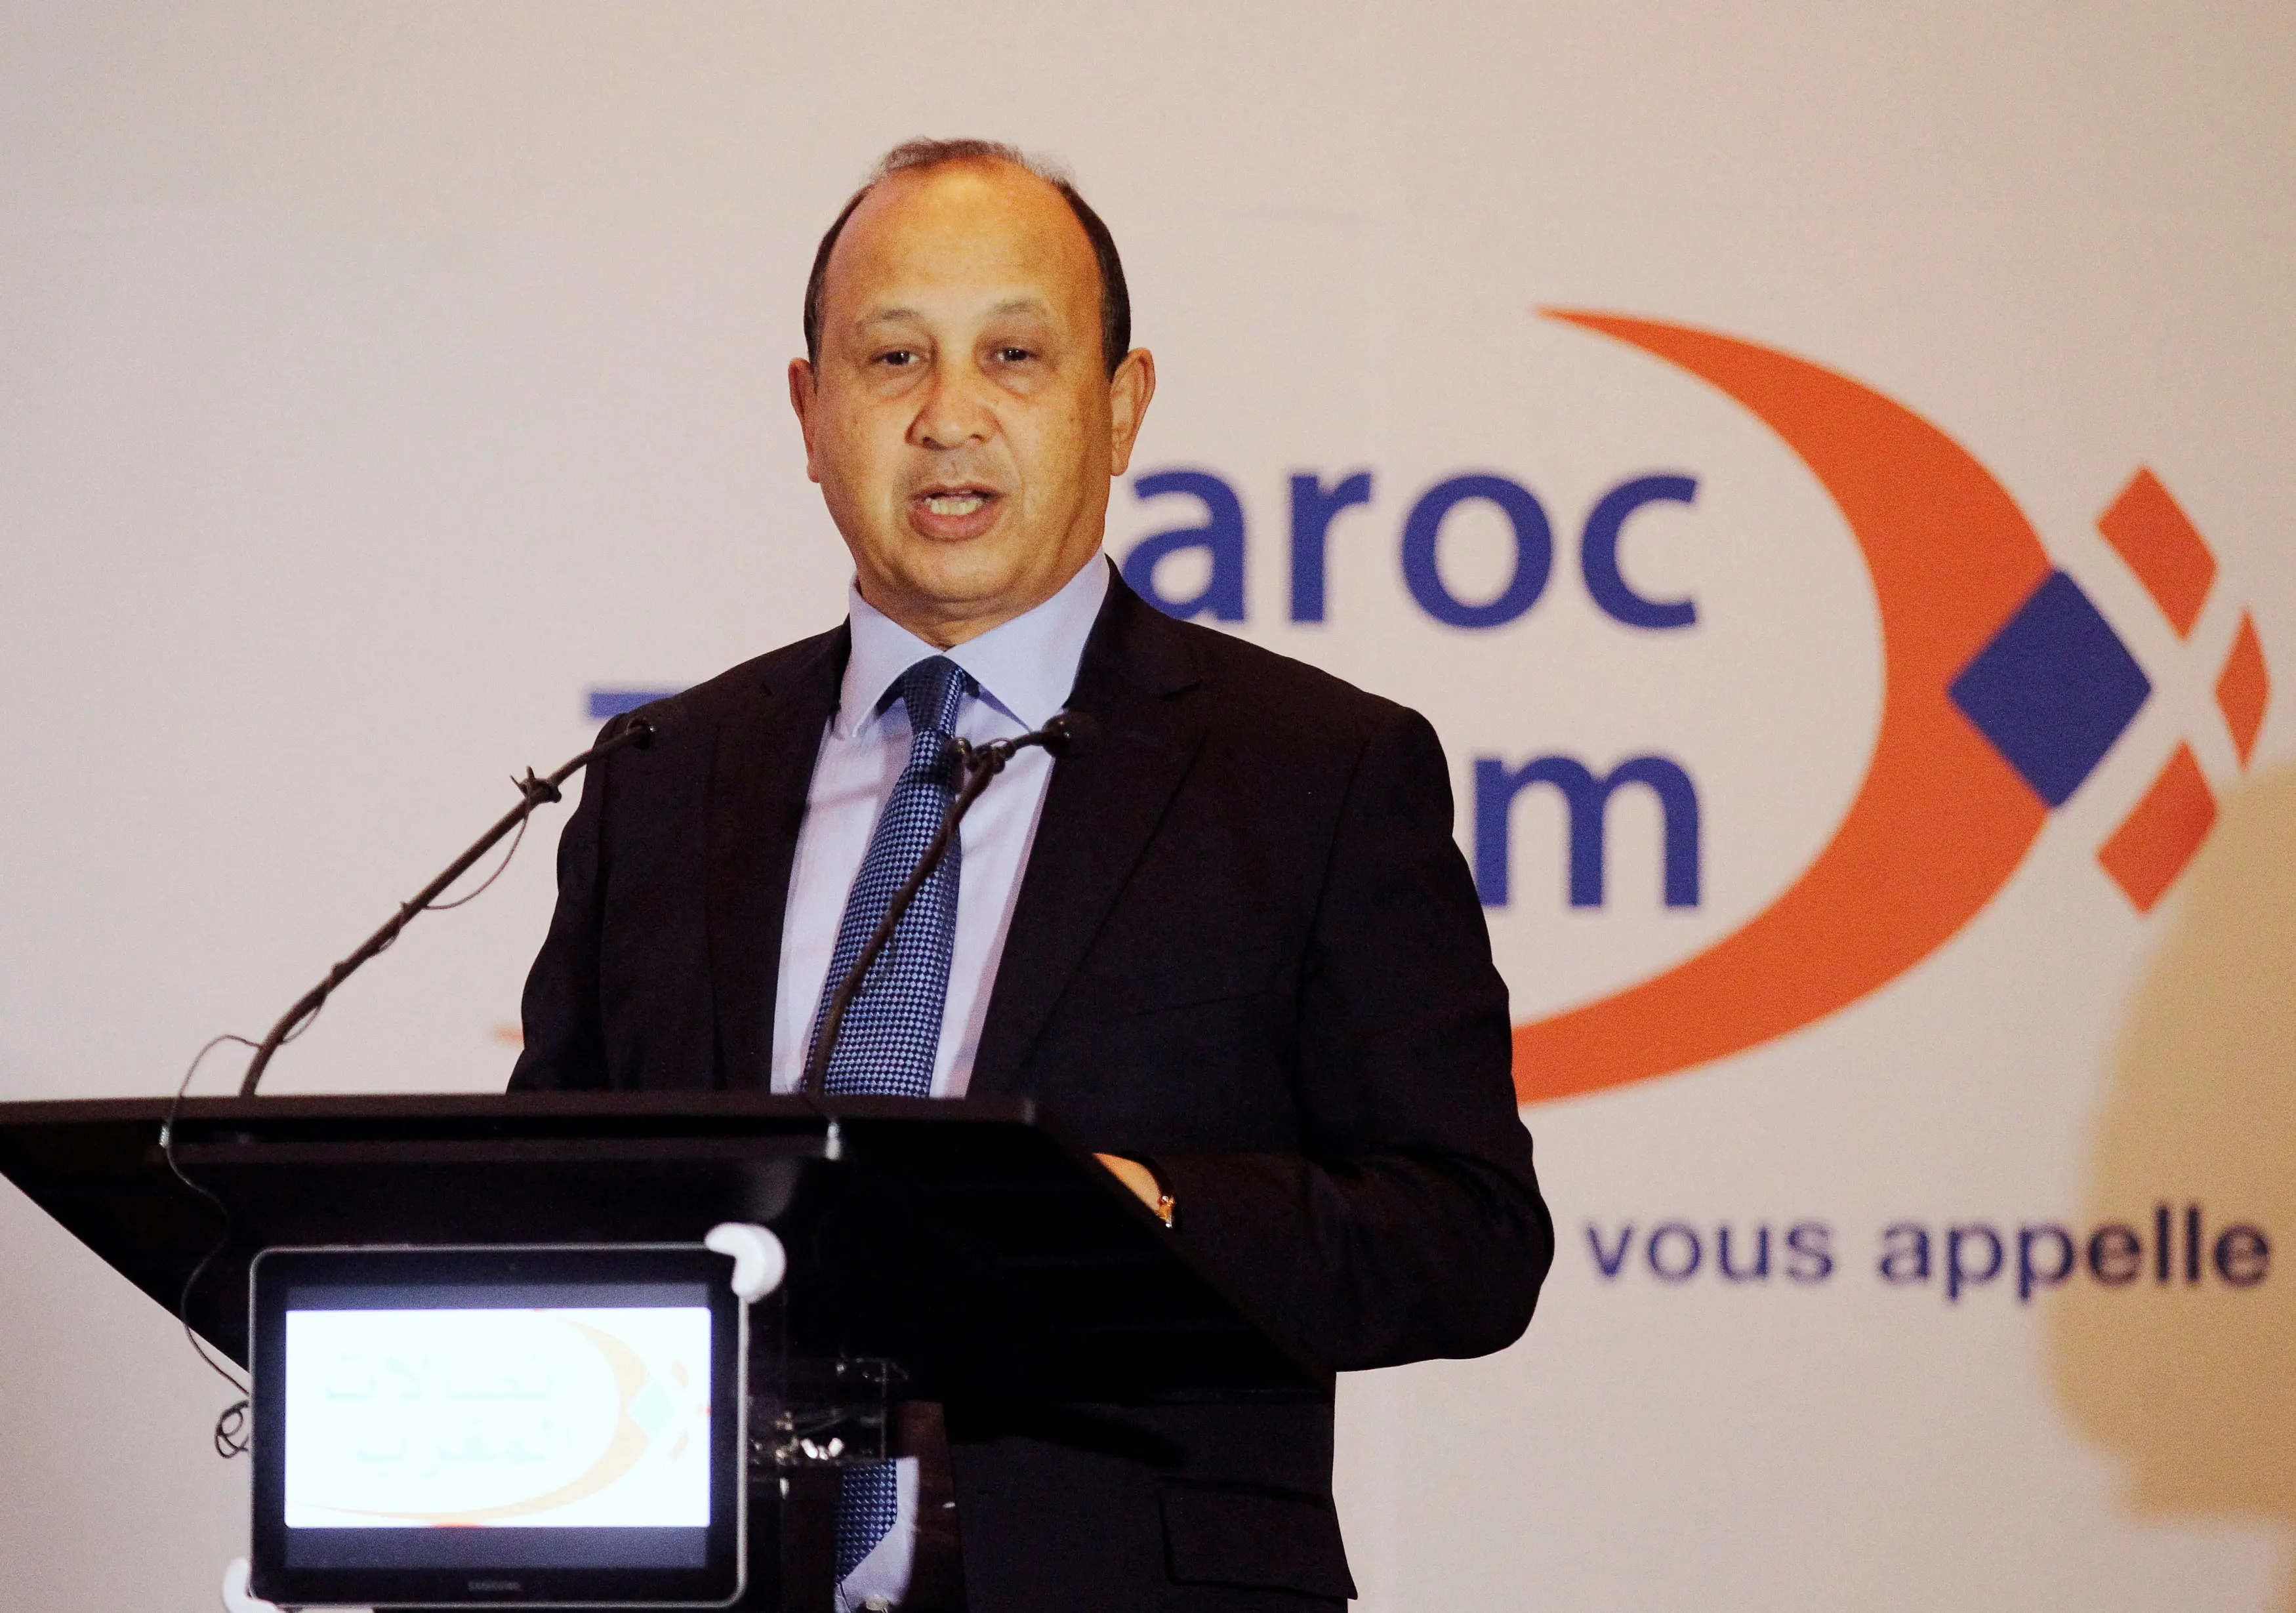 القضاء يرفض استئناف "اتصالات المغرب" على غرامة بـ 626 مليون دولار لـ"وانا"